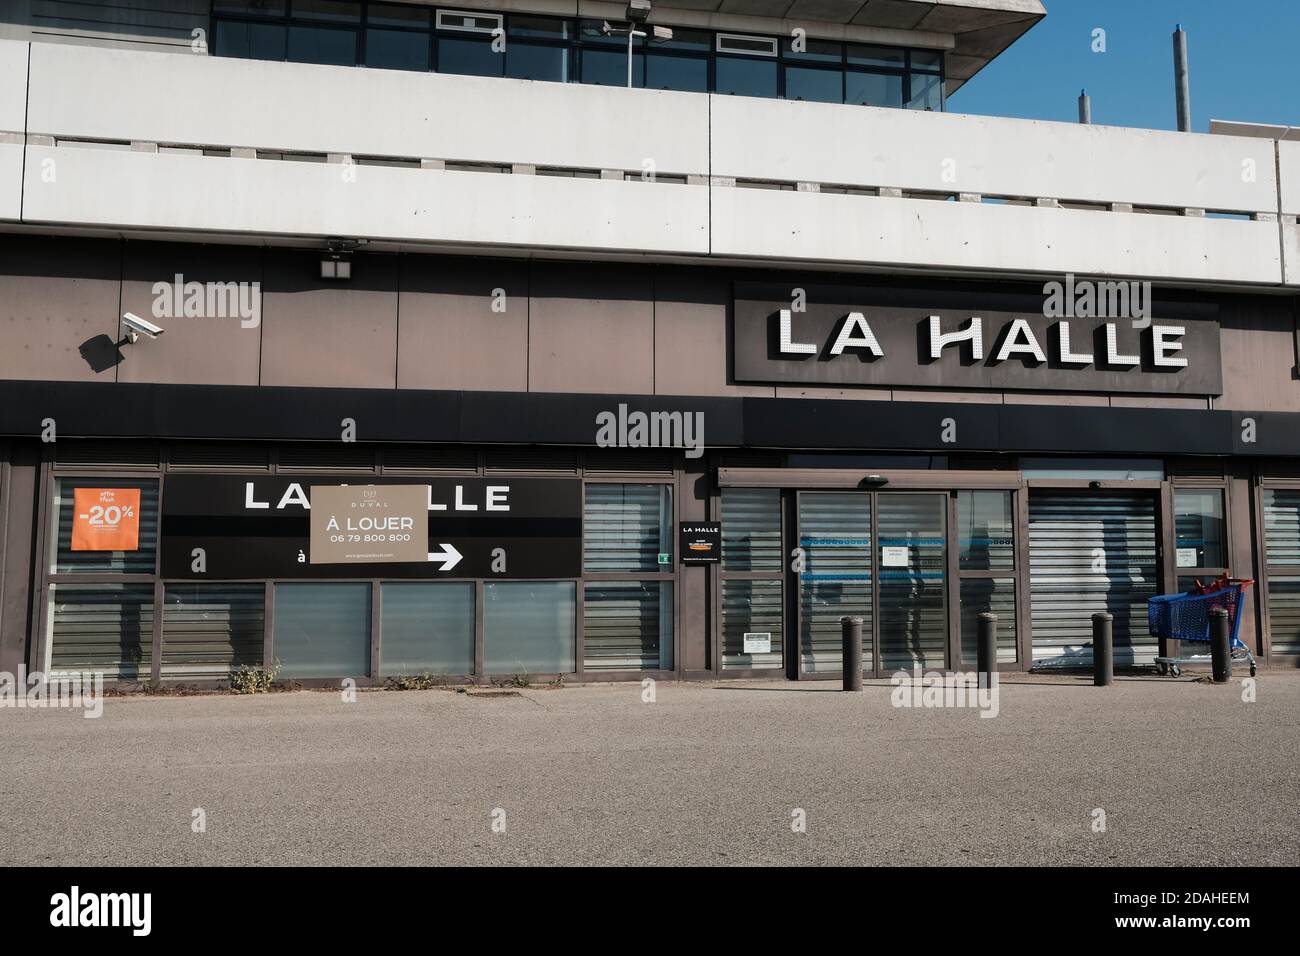 Un negozio la Halle di proprietà del gruppo André è chiuso per fallimento a causa della crisi economica della pandemia di Coronavirus. Foto Stock